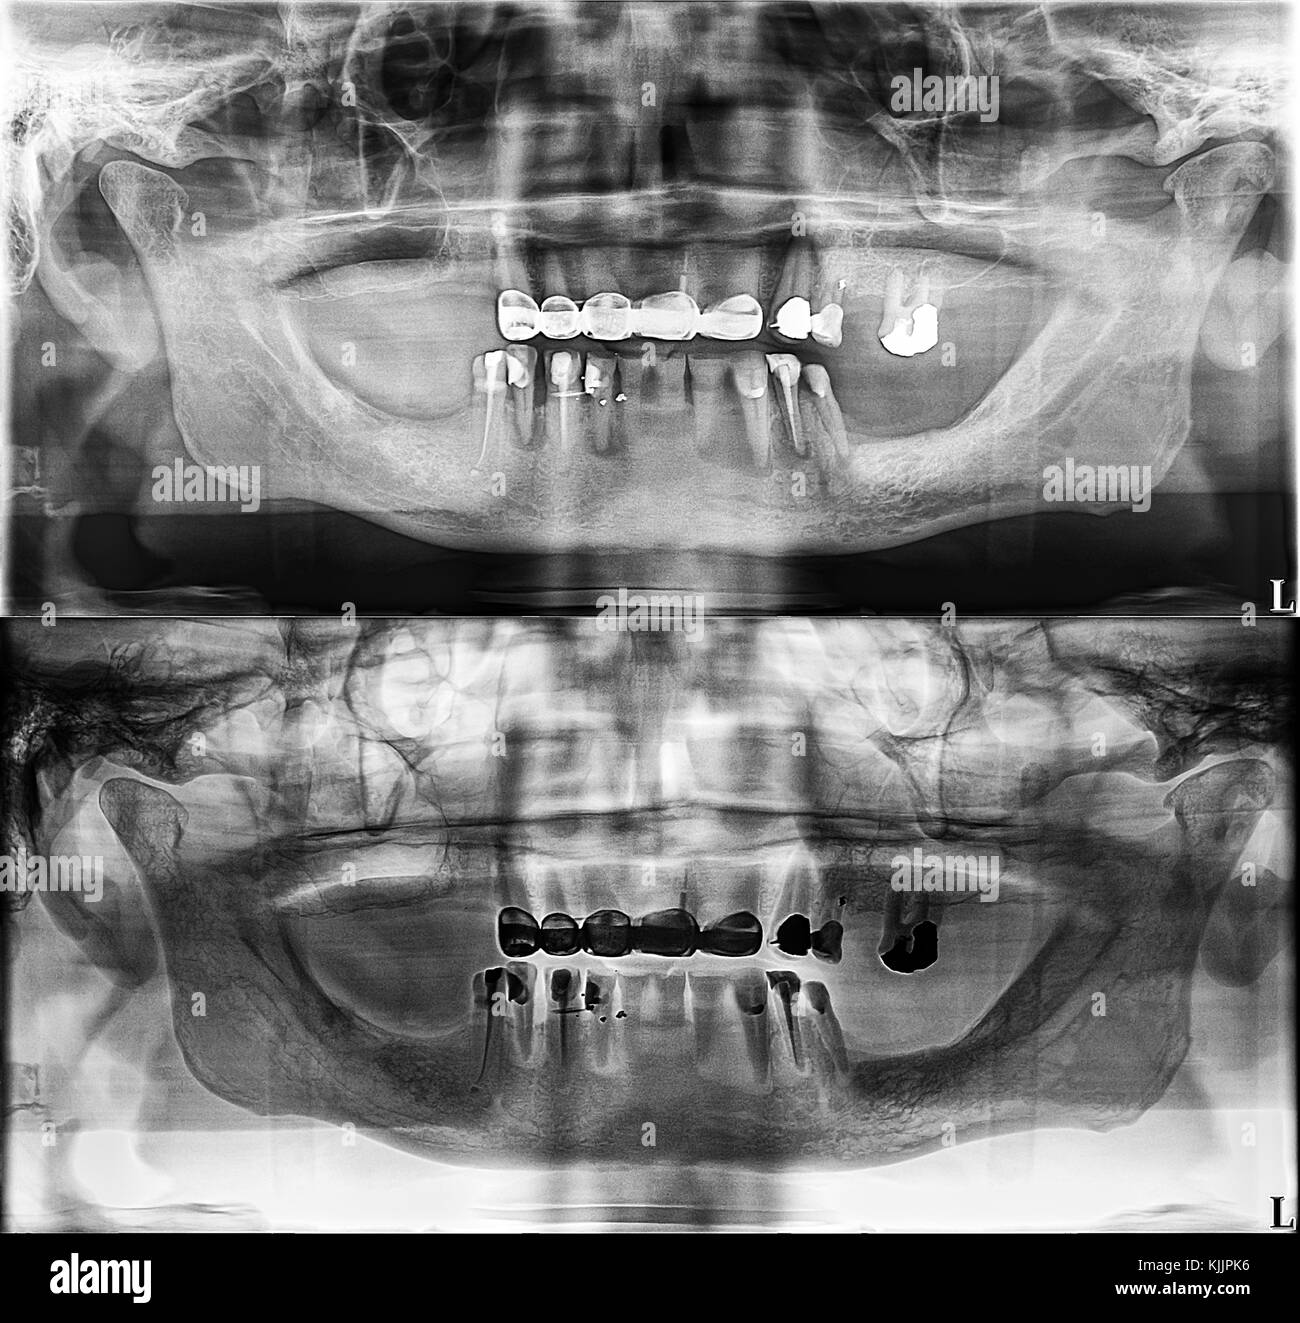 Rx dentaire panoramique fixe, les dents, l'amalgame dentaire, couronne dentaire et d'étanchéité, pont canal rempli Banque D'Images